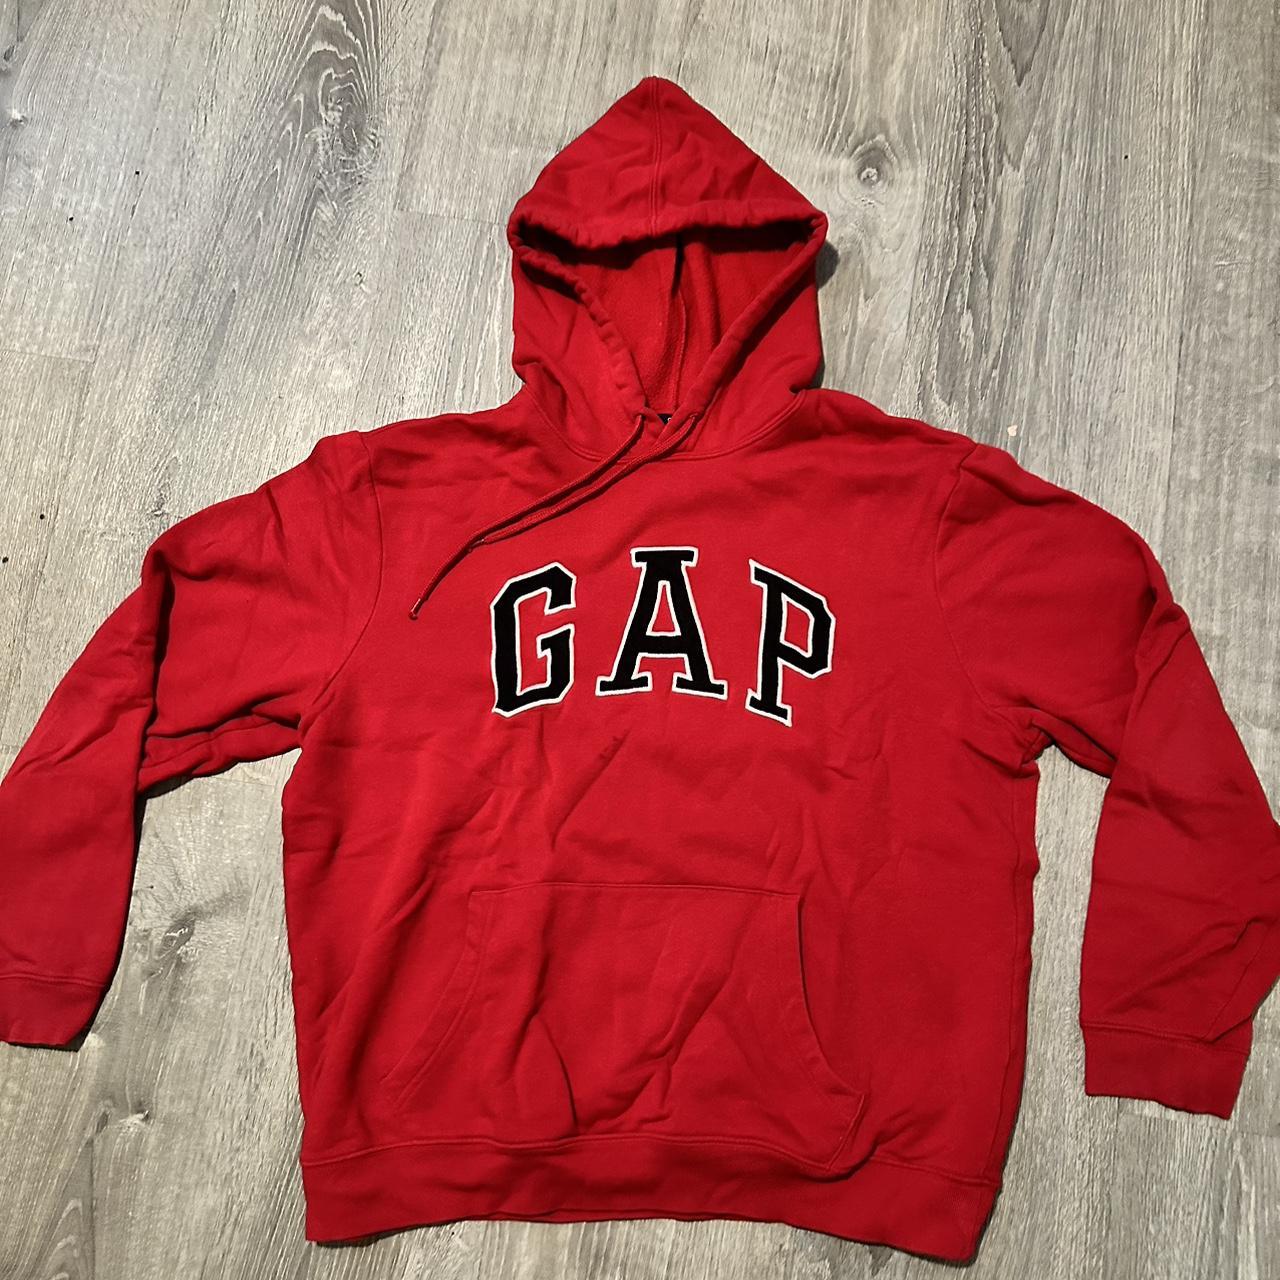 Gap Men's Red and Black Hoodie | Depop